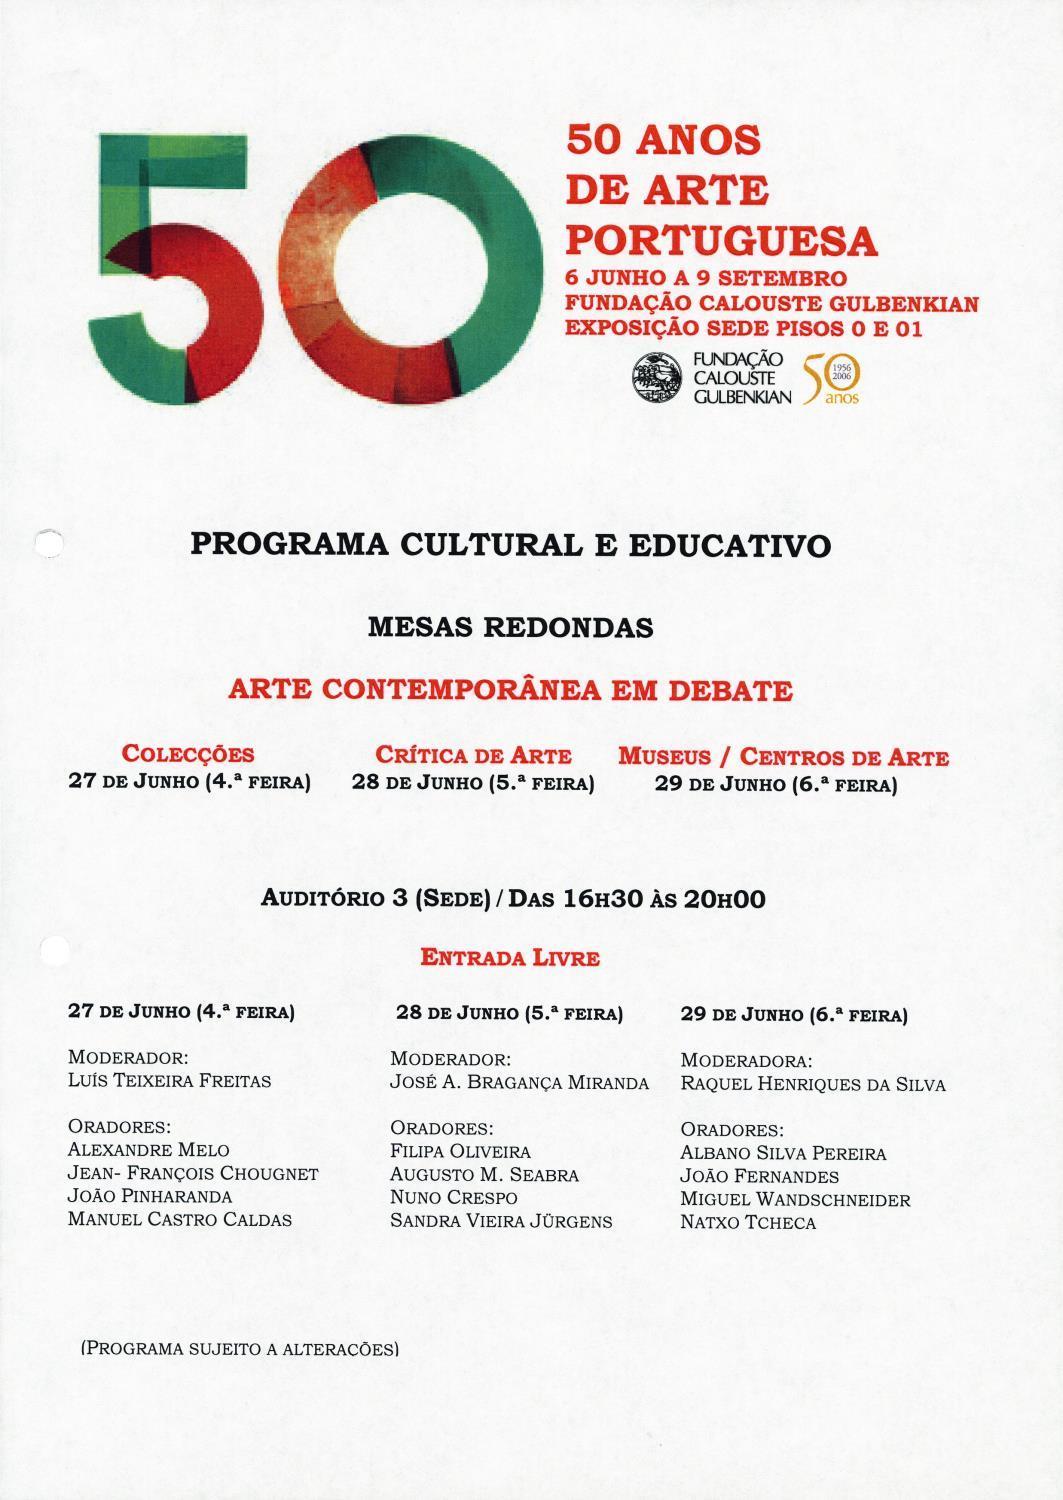 50 Anos de Arte Portuguesa. Mesas Redondas. Arte Contemporânea em Debate